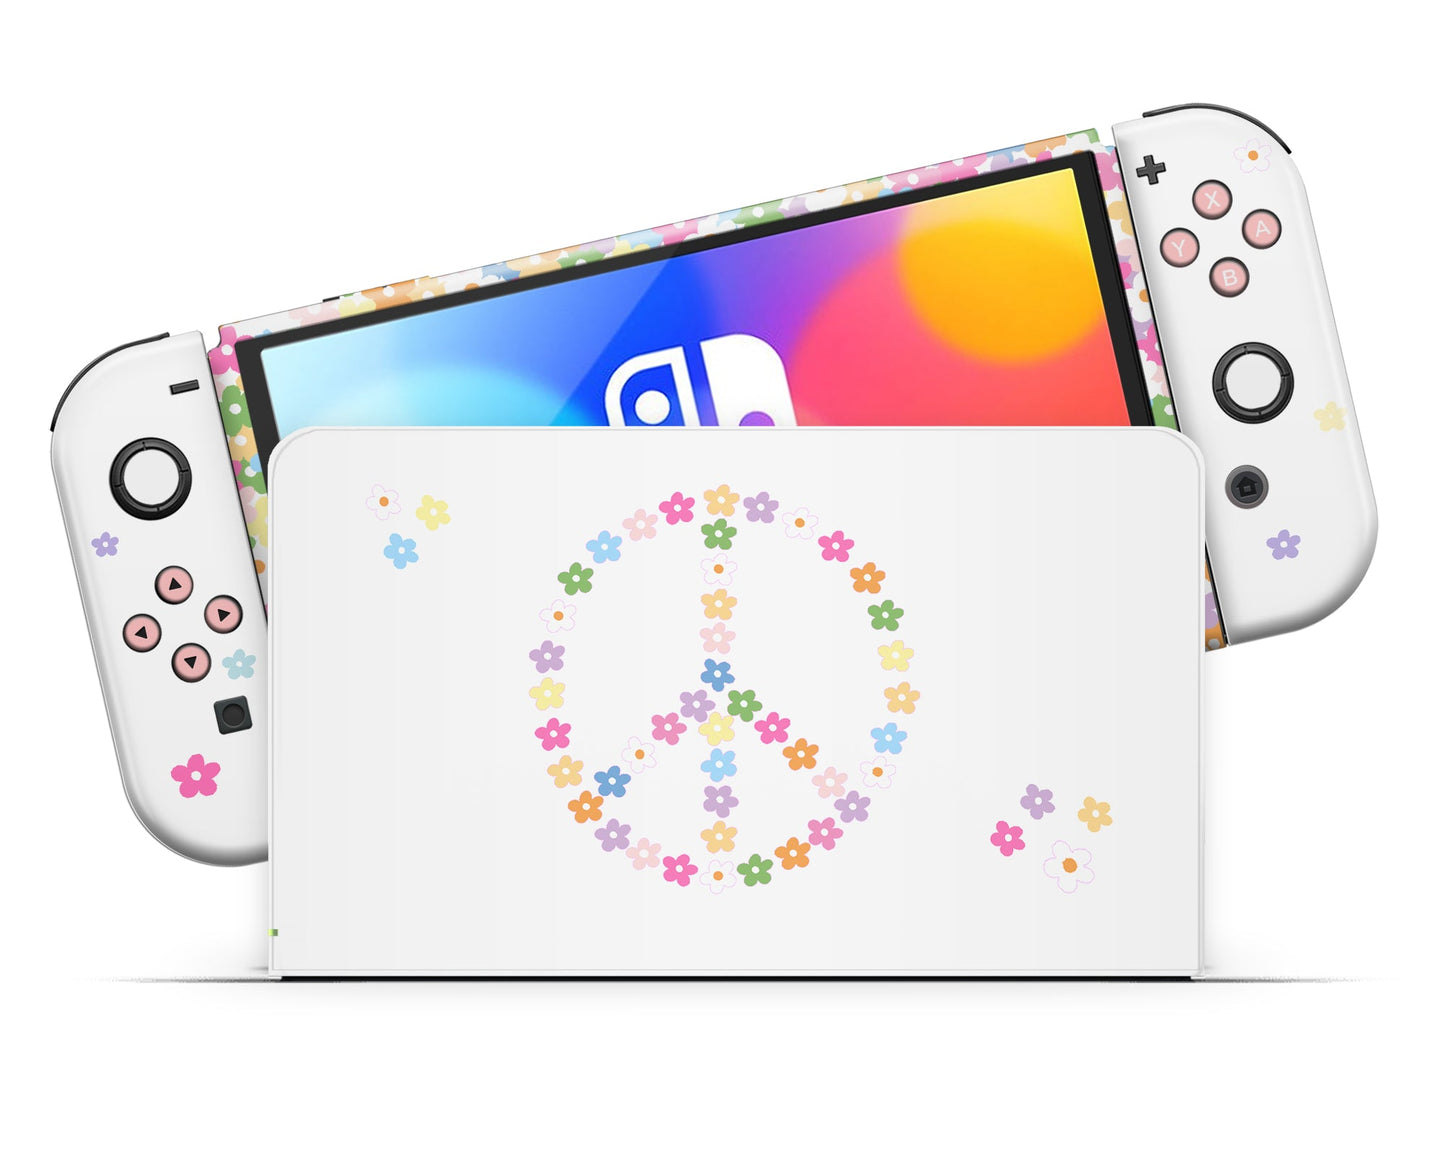 Lux Skins Nintendo Switch OLED Floral Peace Sign Full Set Skins - Art Floral Skin